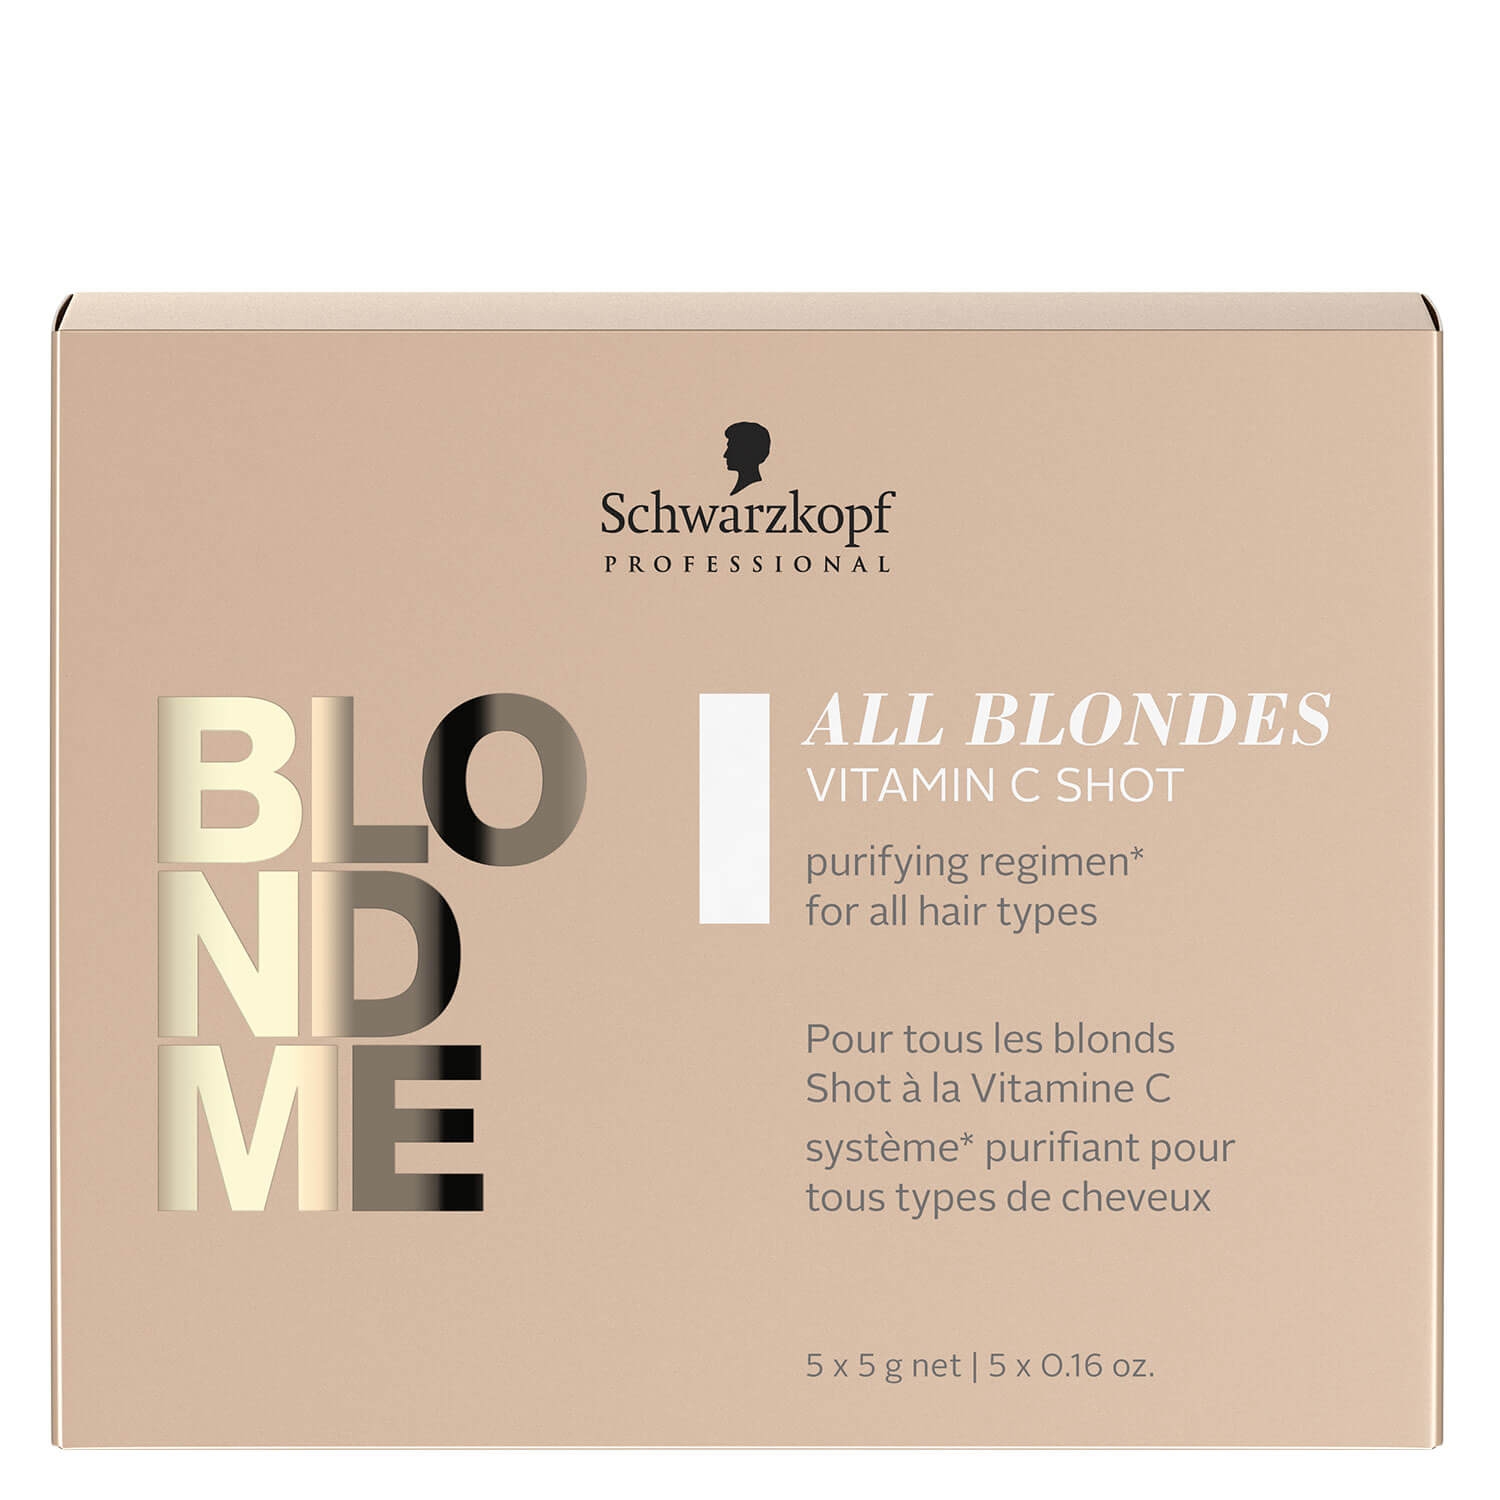 Produktbild von Blondme - All Blondes Detox Vitamin C Shots